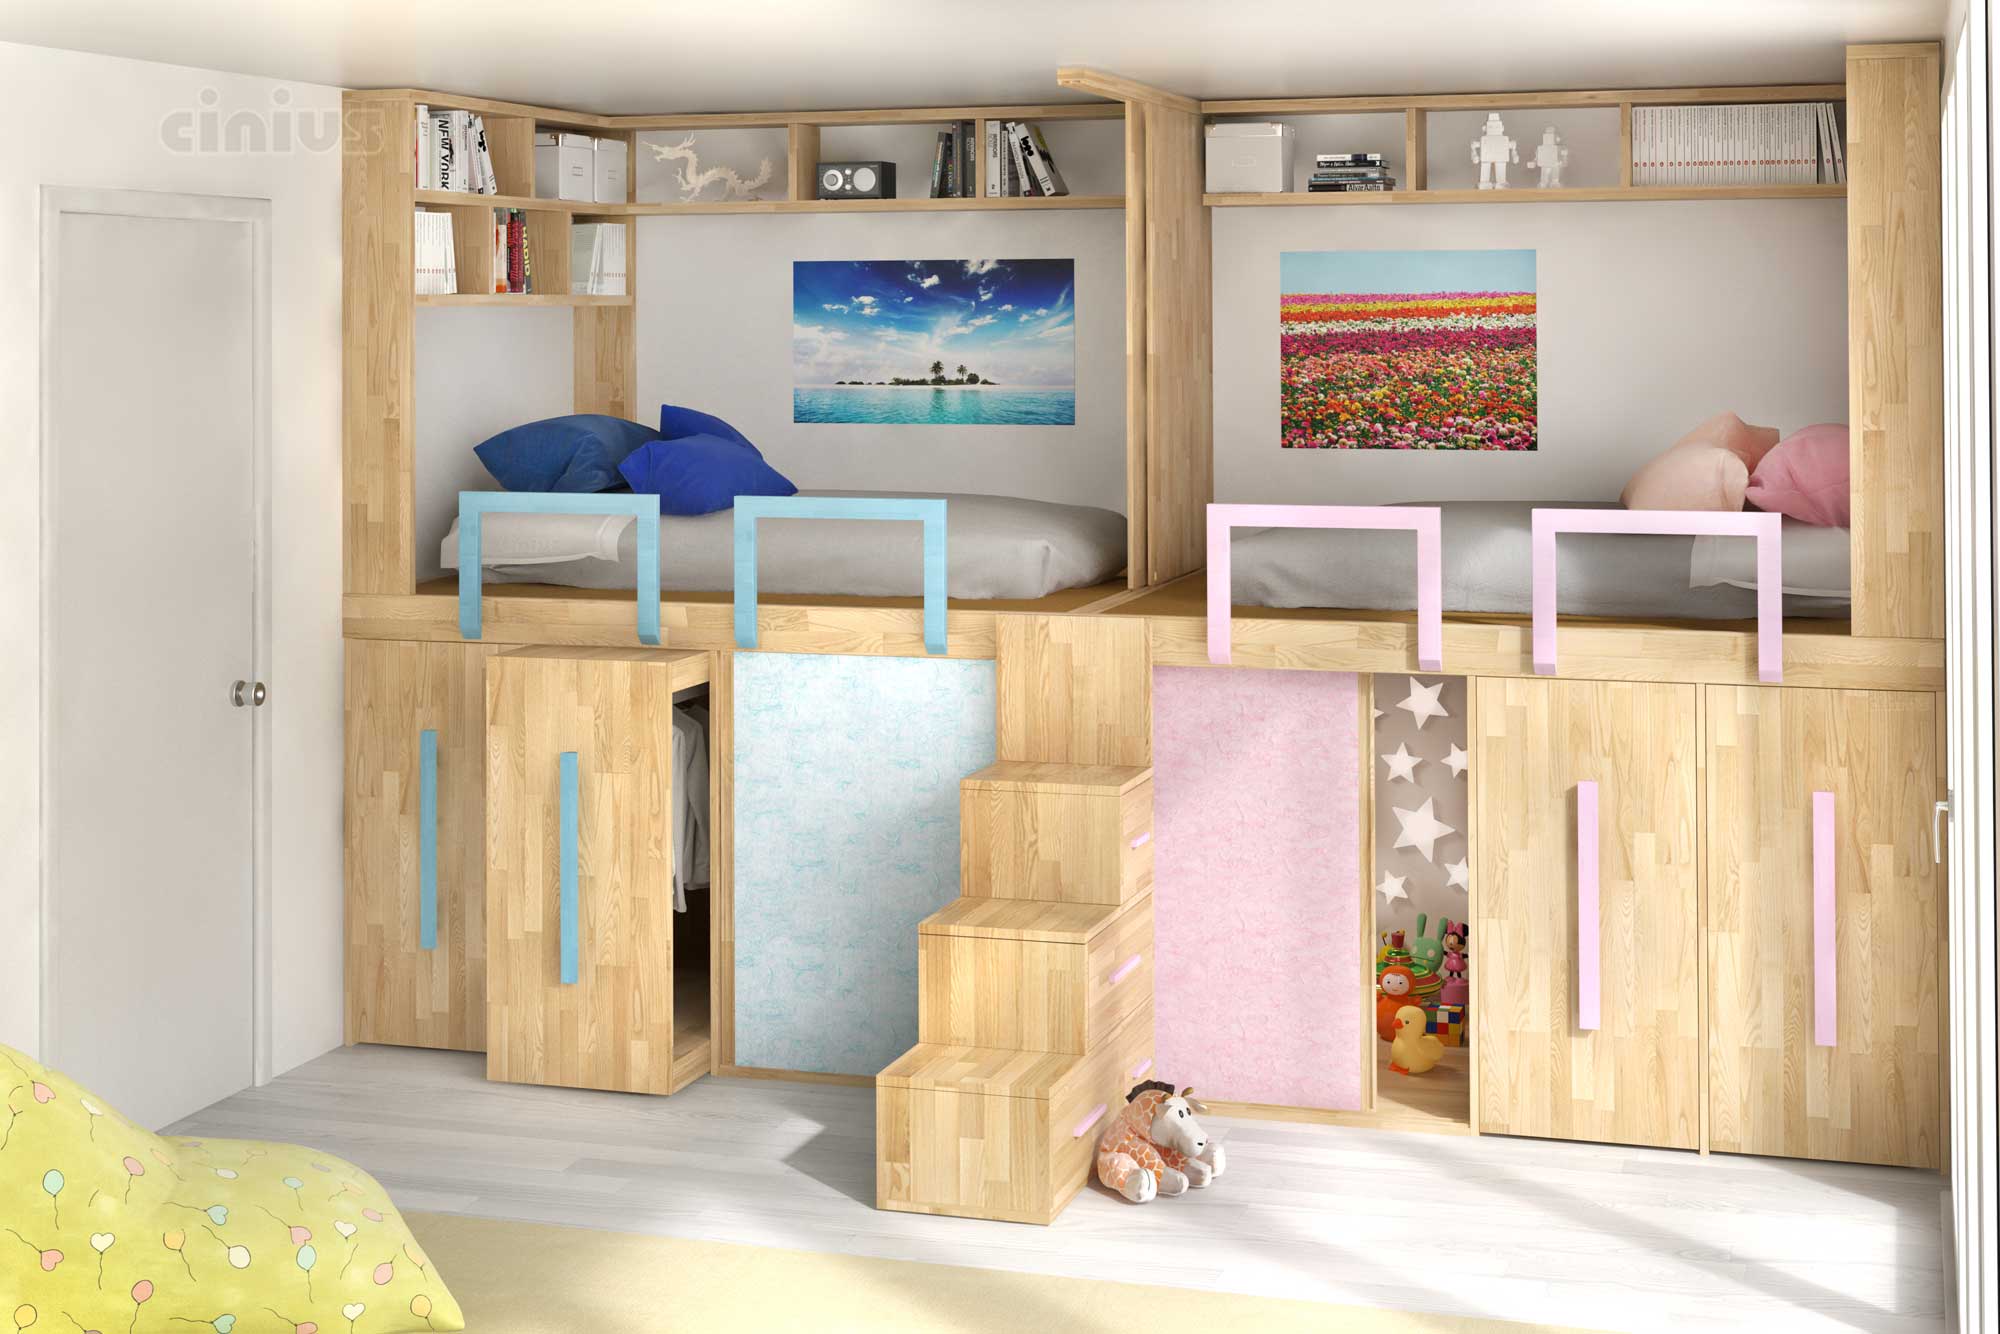 Une chambre enfant personnalisée - Lit SpazioBed-Young double de Cinius pour hommes et femmes avec espace jeux